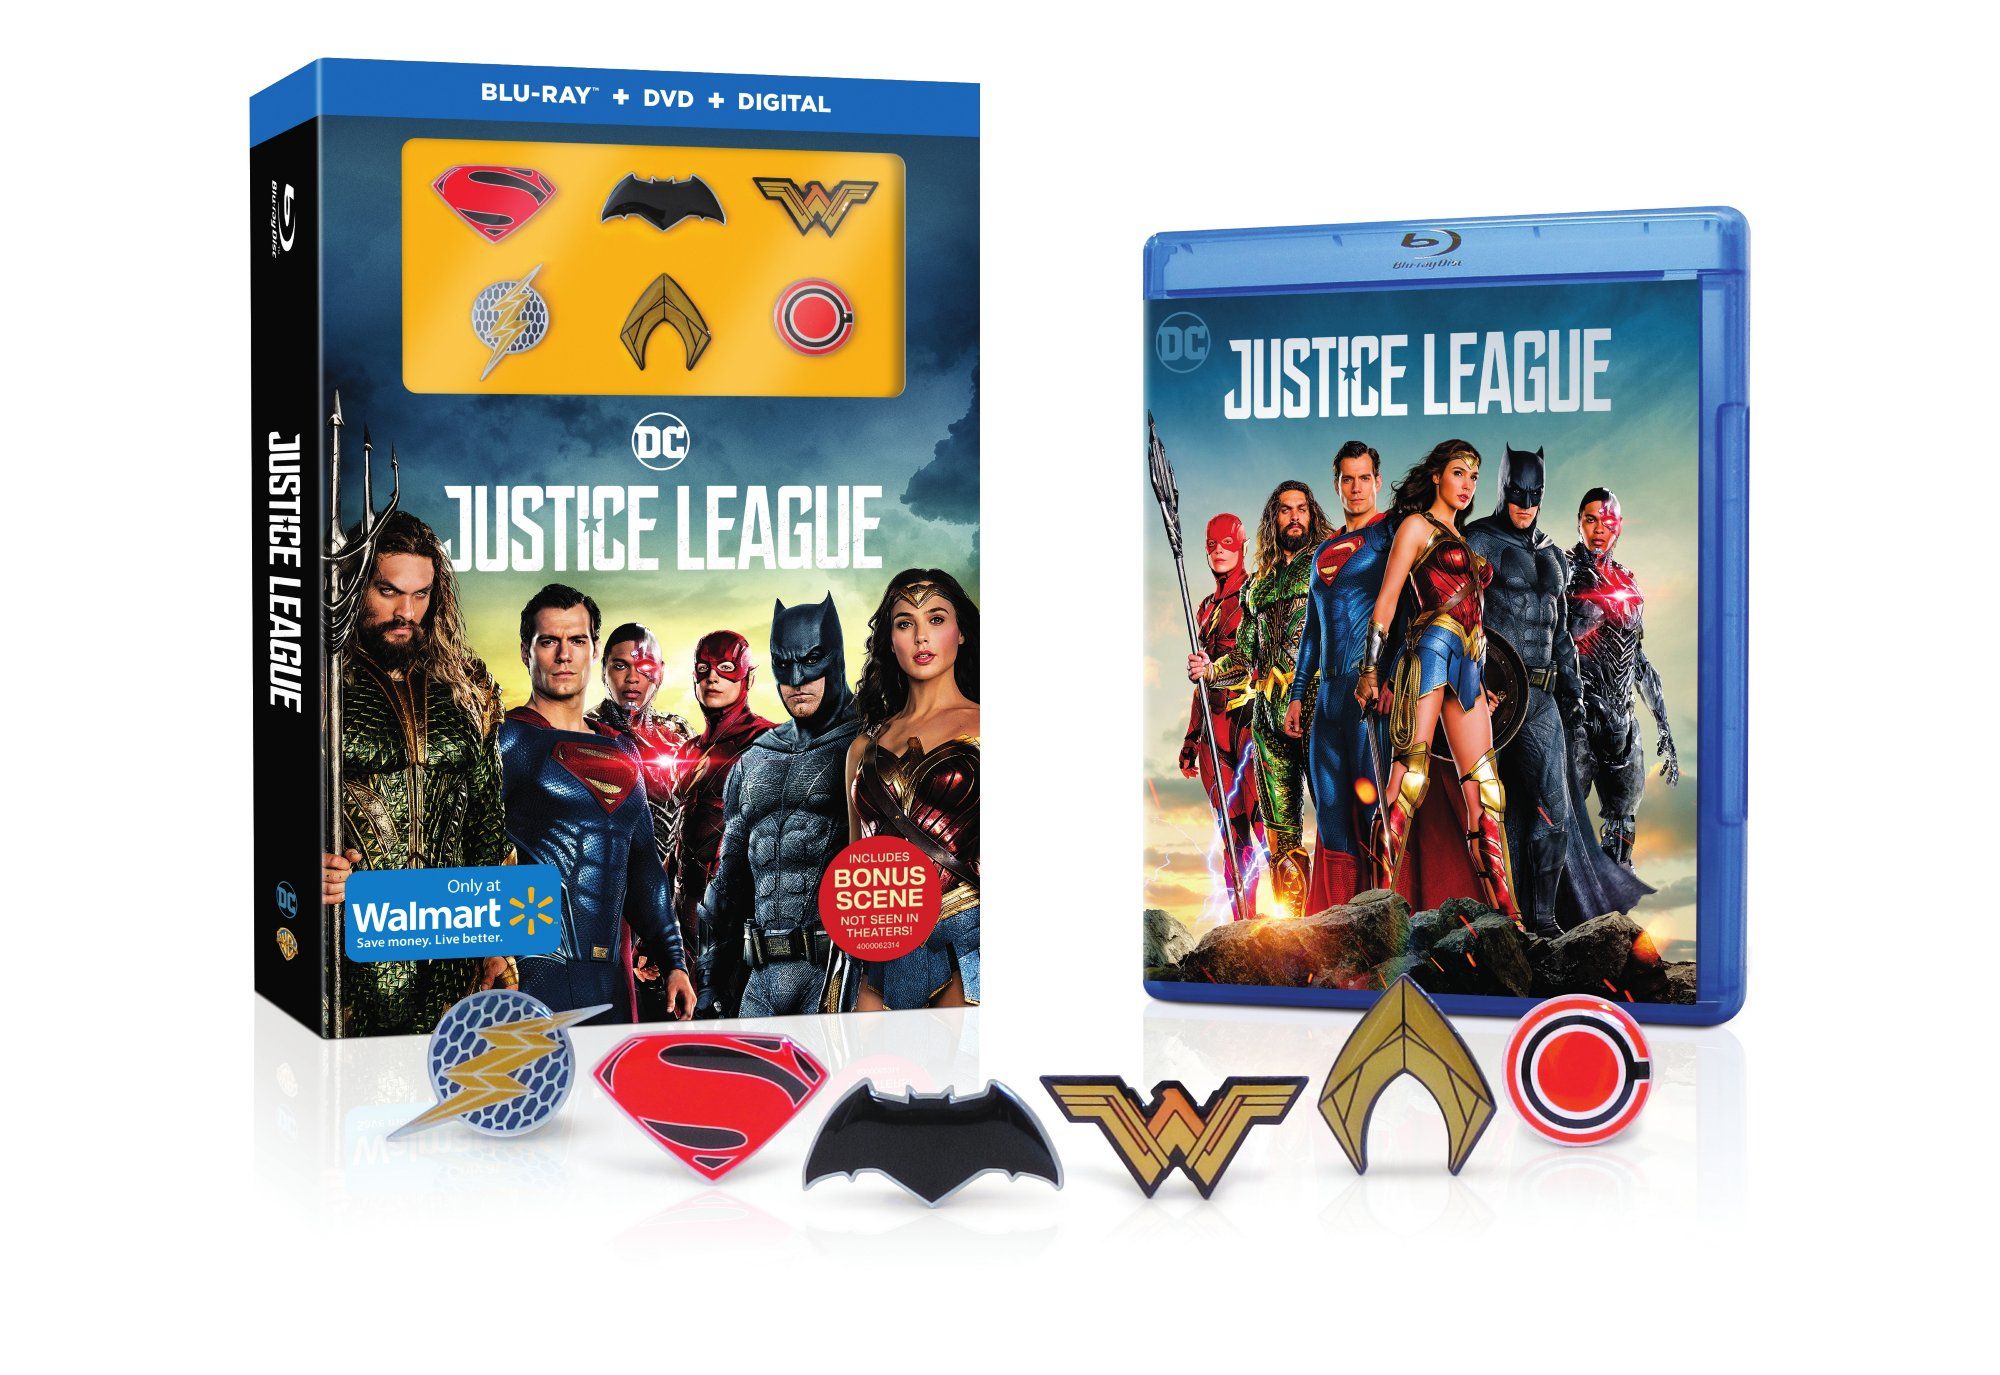 Justice League Blu-ray presenta una scena bonus non mostrata nei cinema